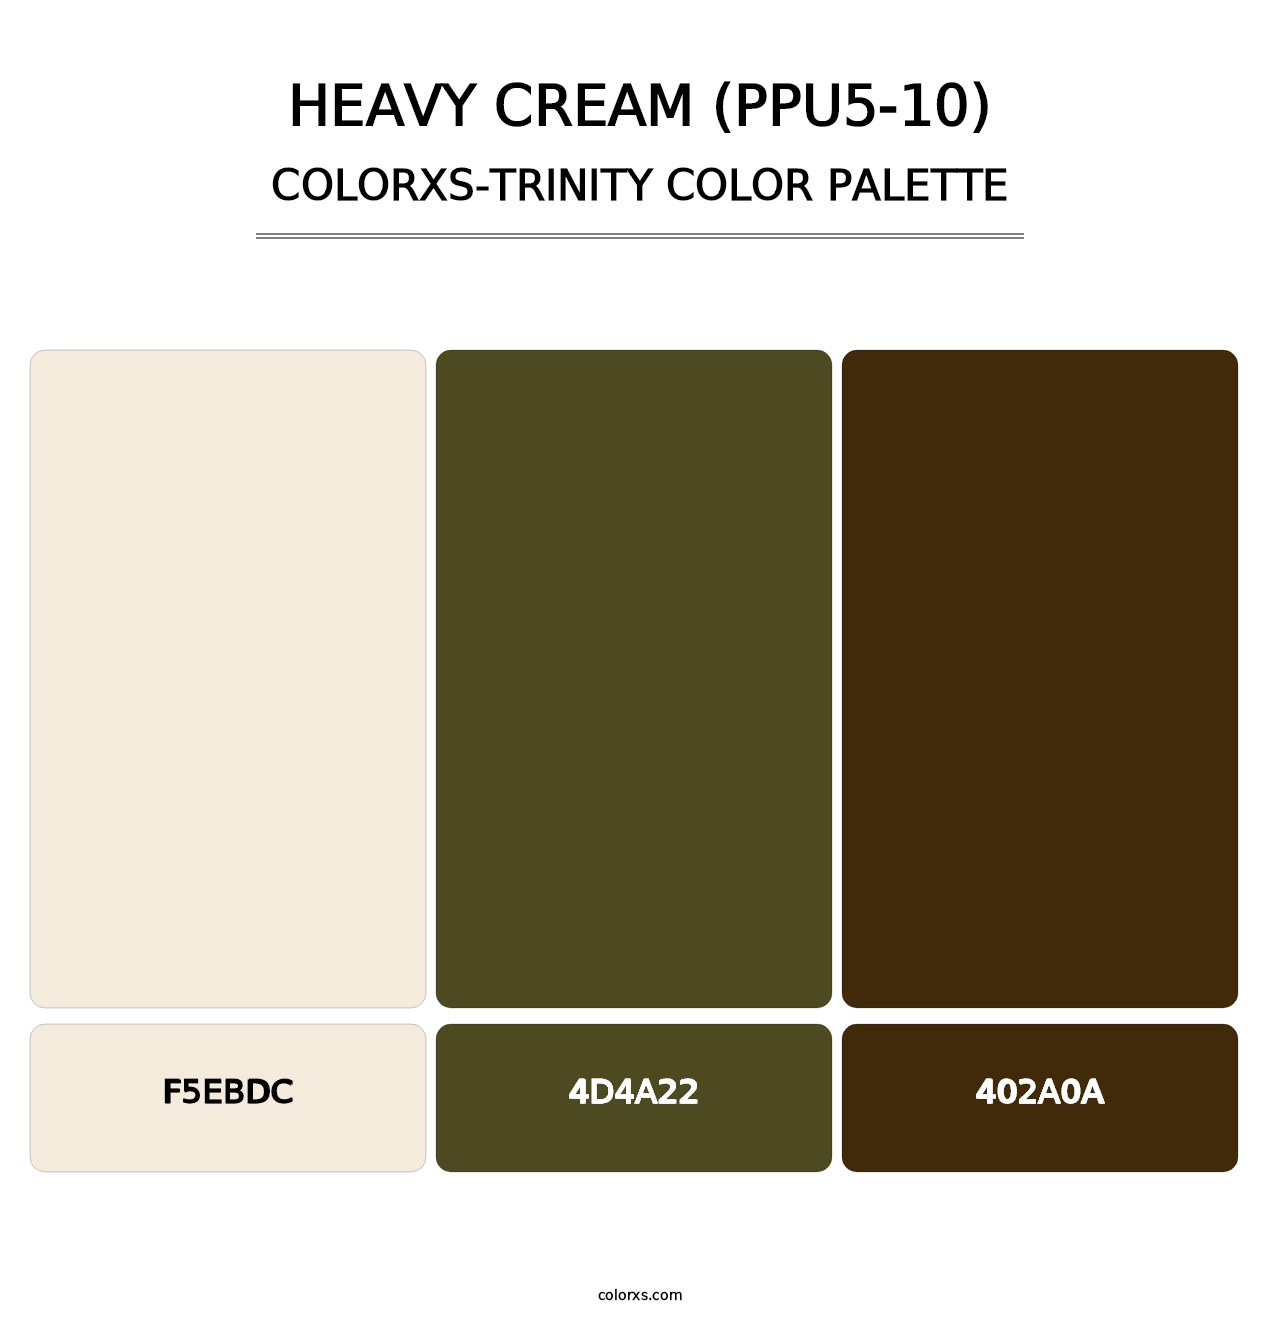 Heavy Cream (PPU5-10) - Colorxs Trinity Palette